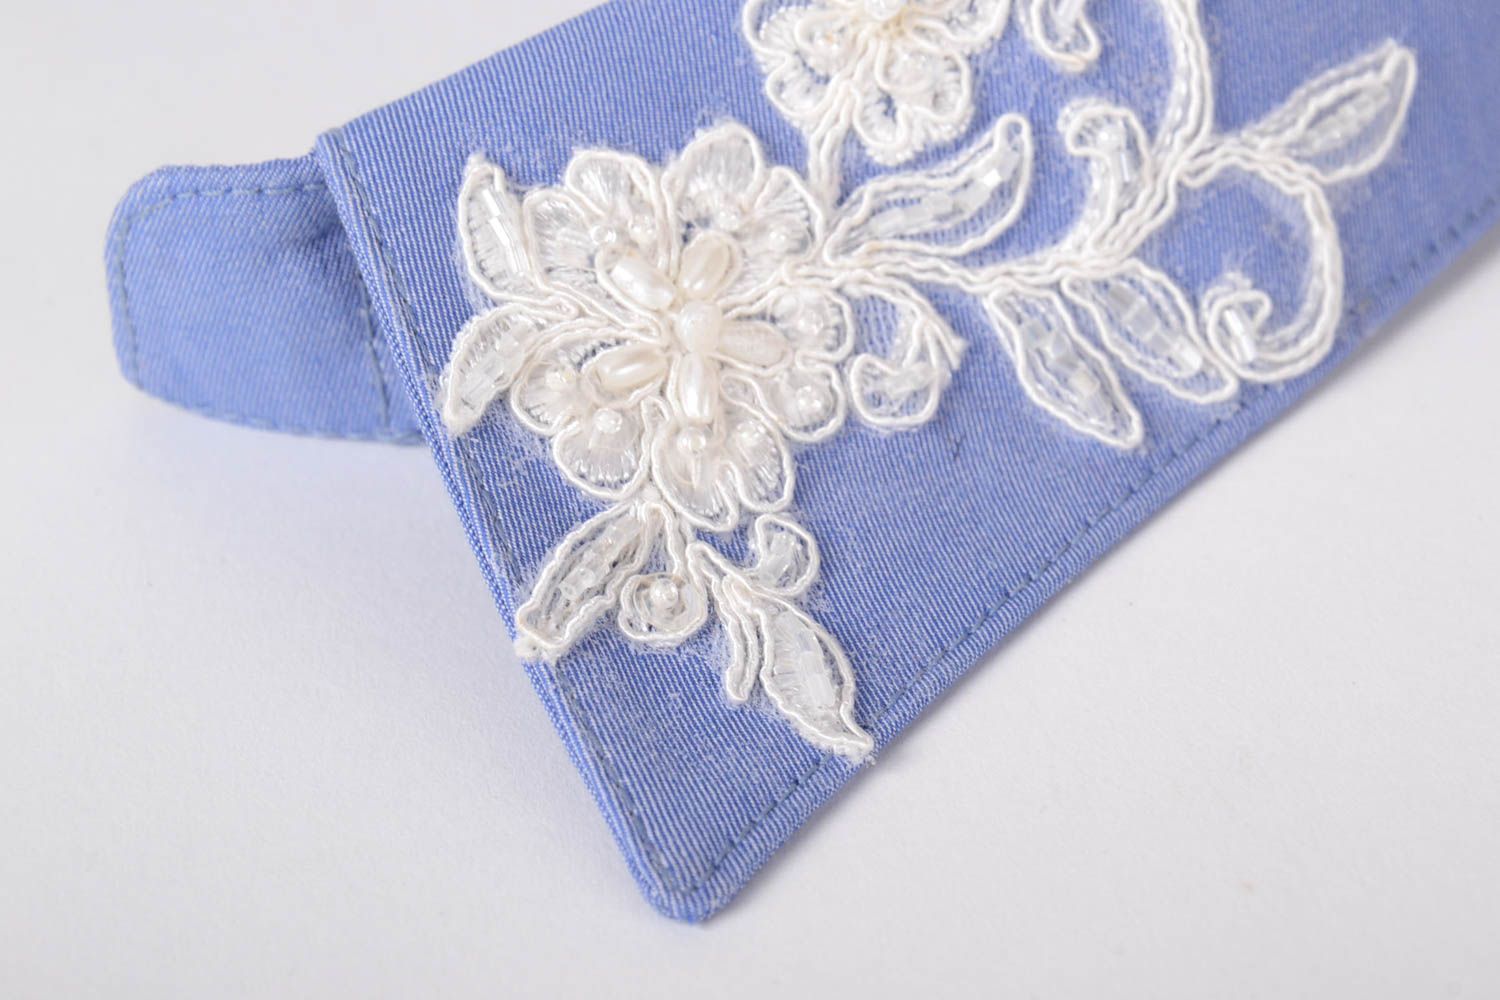 Handmade abnehmbarer Kragen Mode Schmuck Accessoire für Frauen blau weiß foto 5